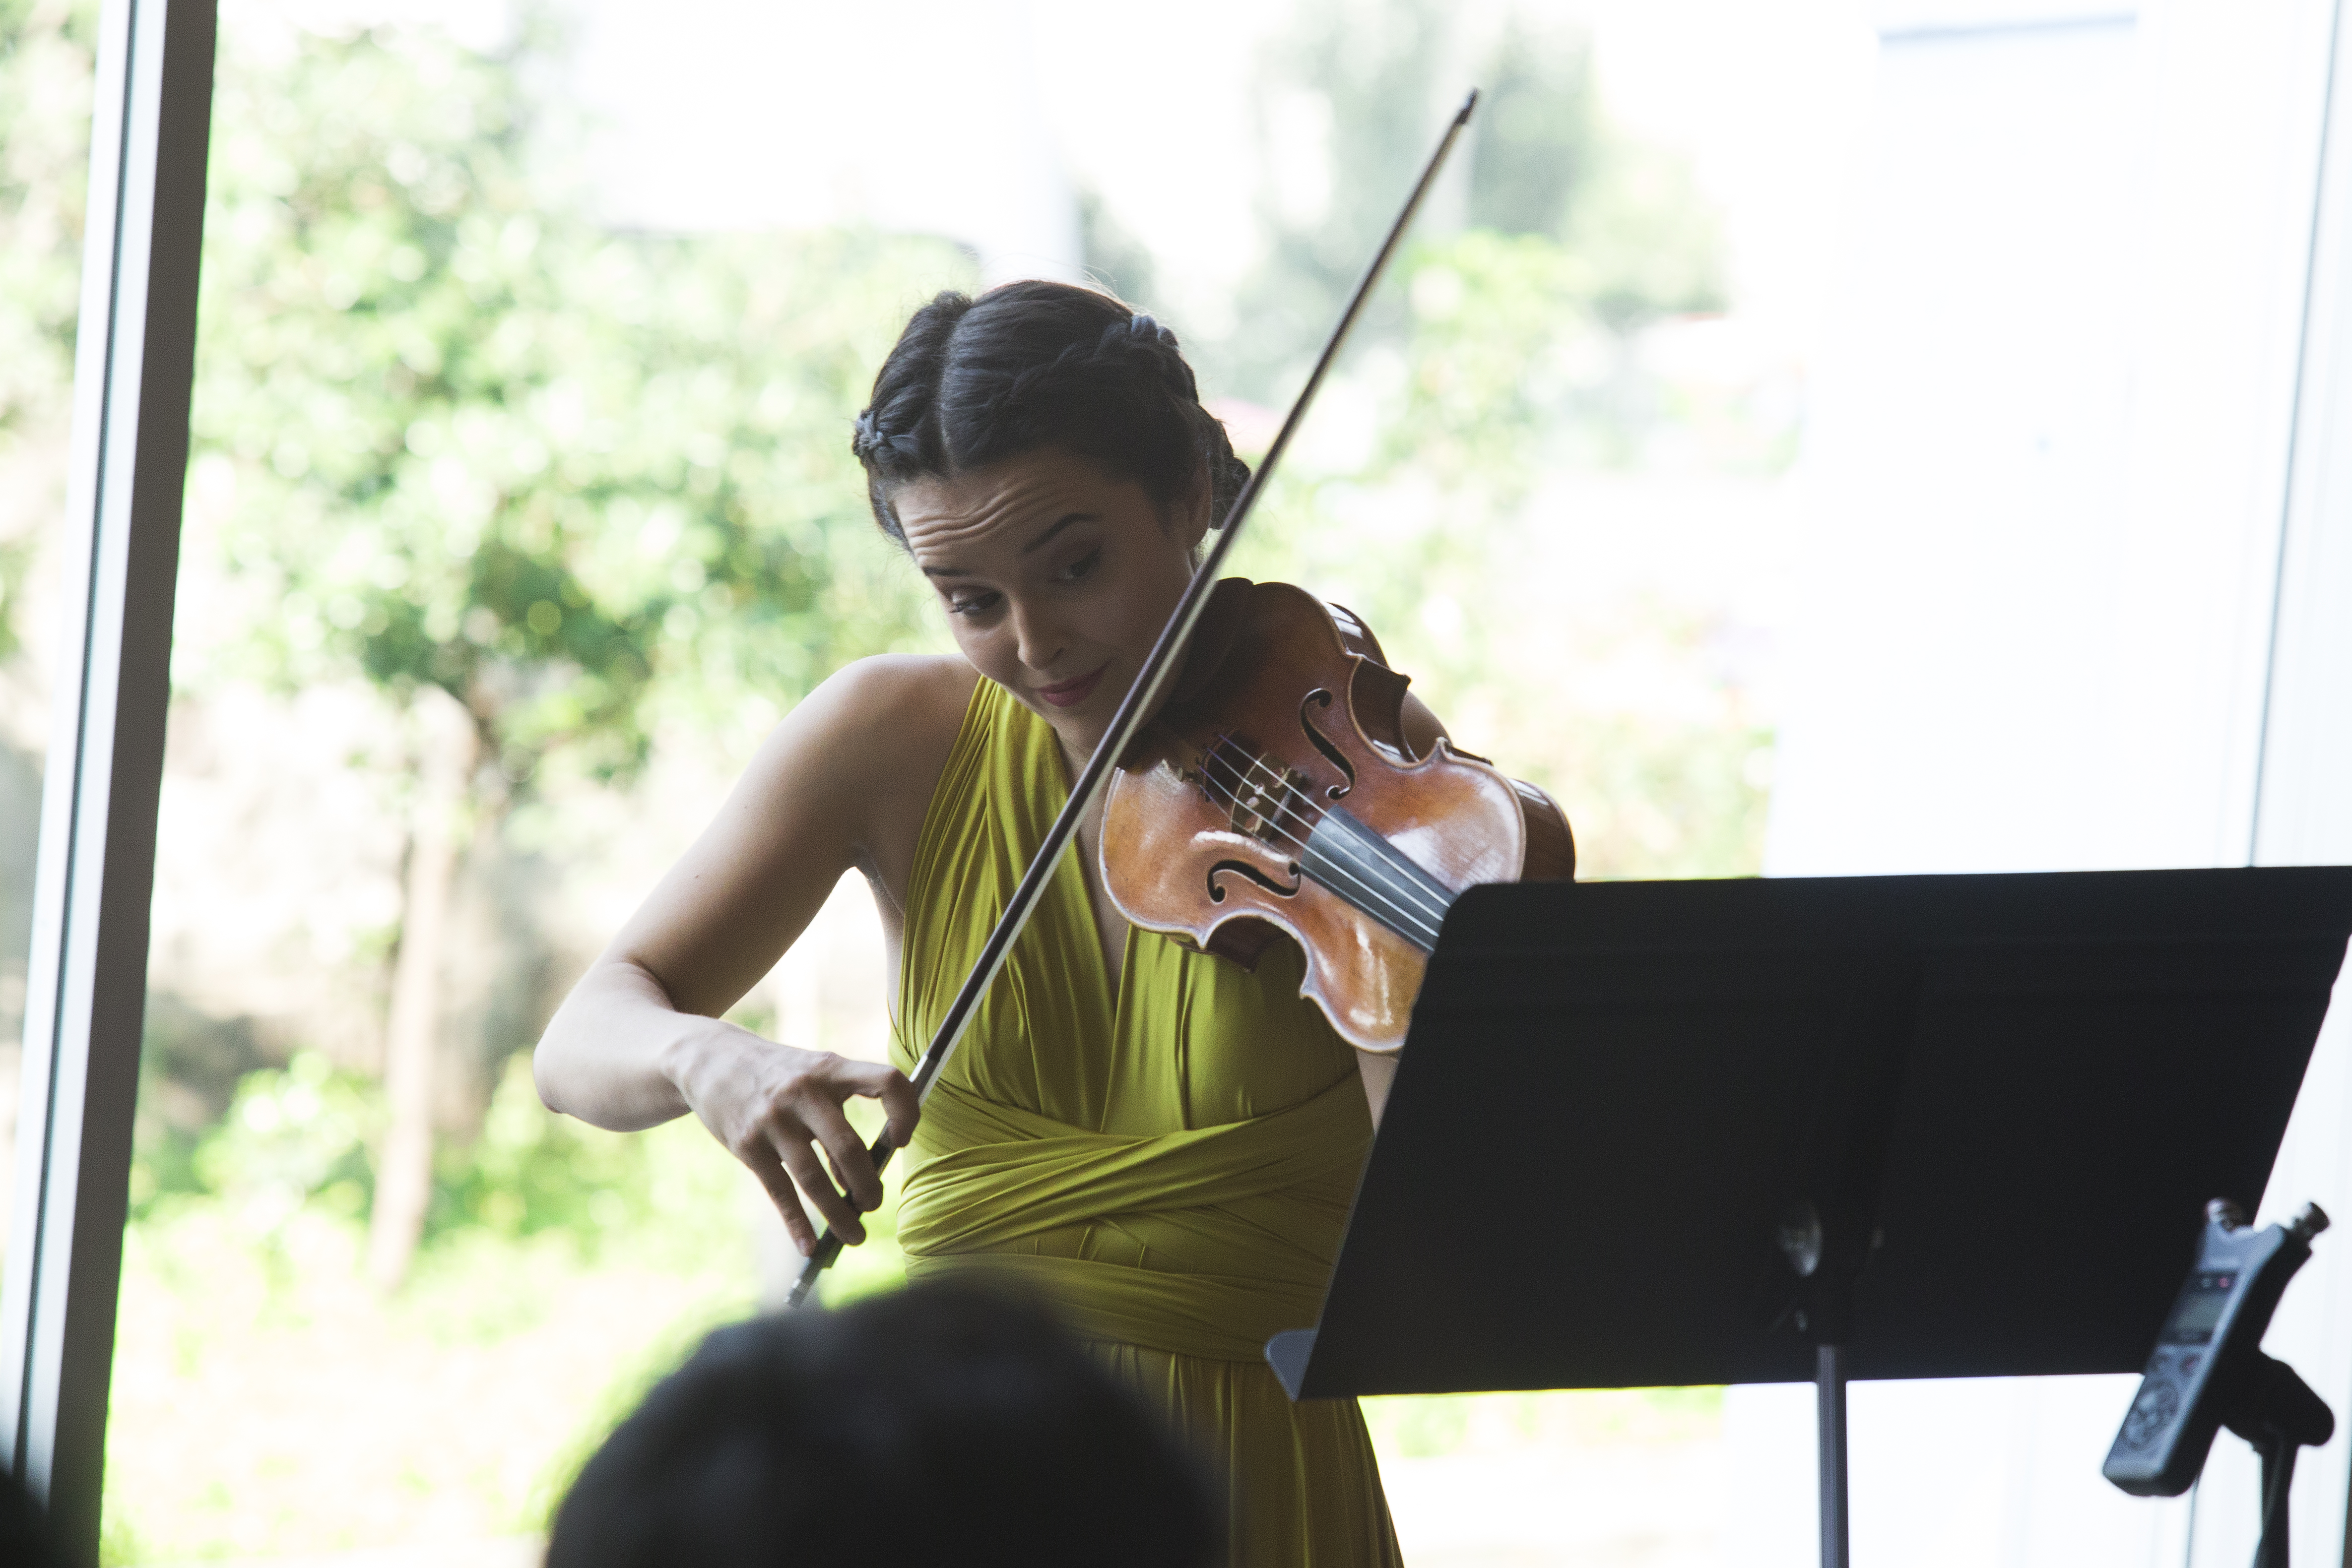 Yoo / Abigel Kralik: Concierto para violín Sibelius | Orquesta Filarmónica de la Ciudad de México